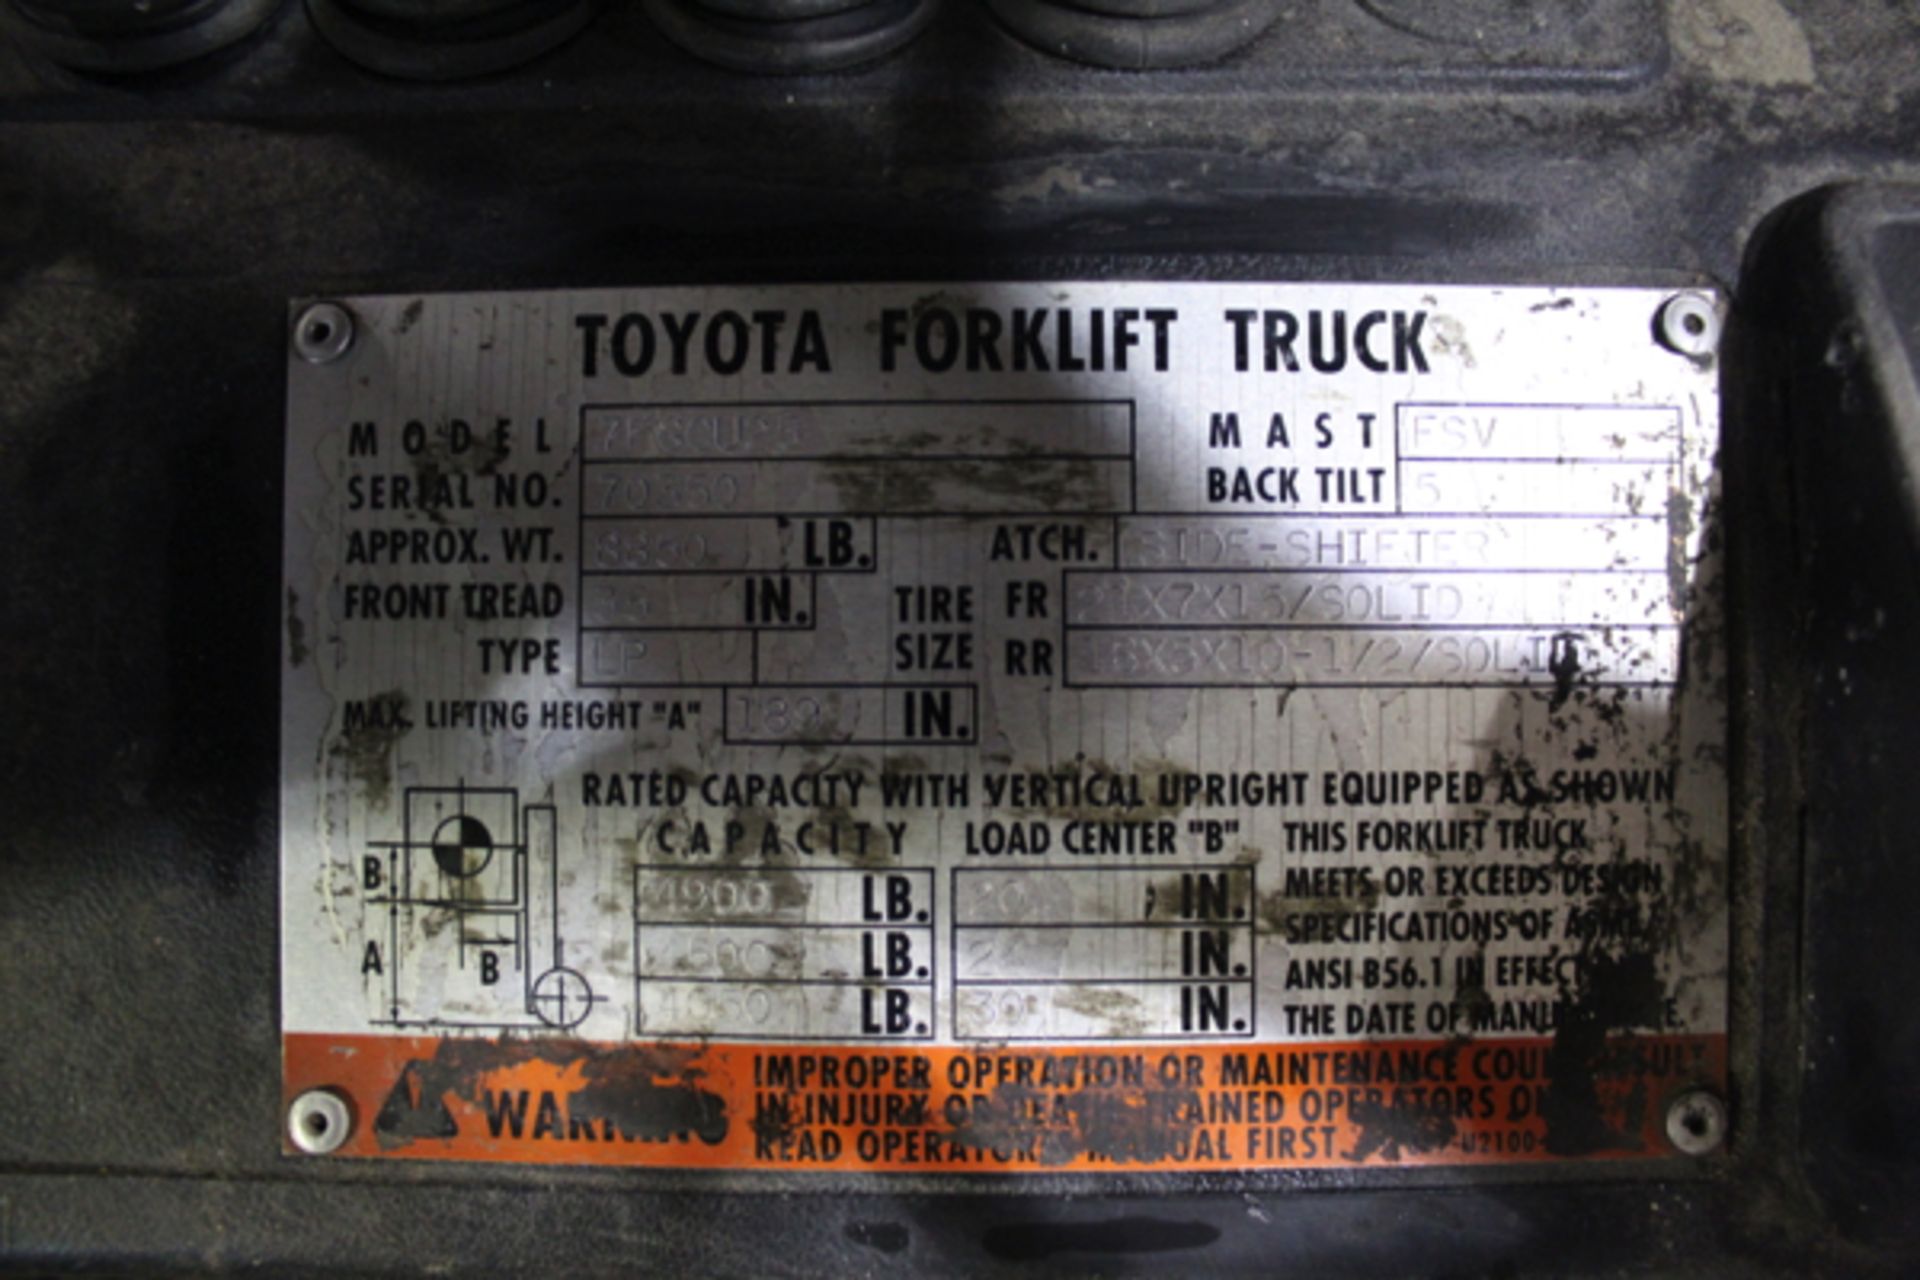 Toyota 4900 lb. Forklift, M# 7FGCU25, S/N 70350, Side Shift - Image 2 of 2